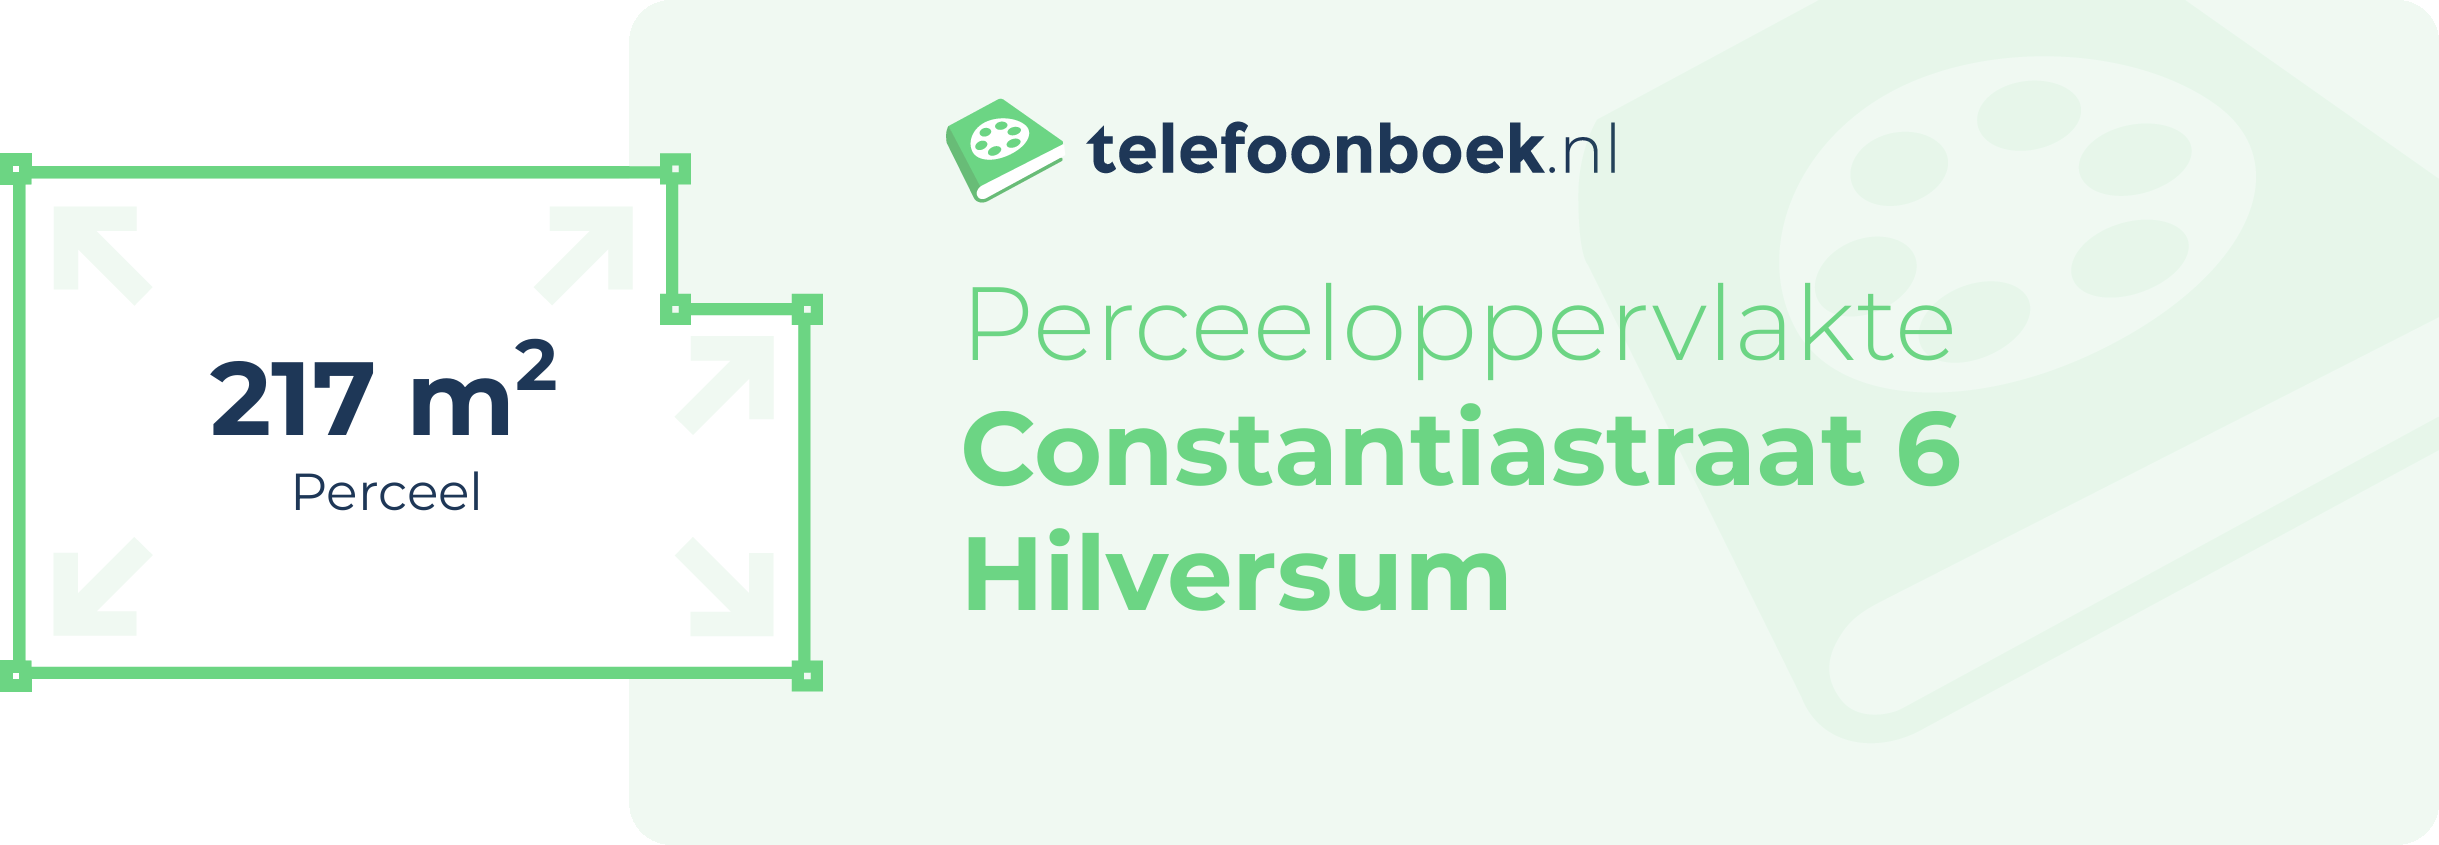 Perceeloppervlakte Constantiastraat 6 Hilversum